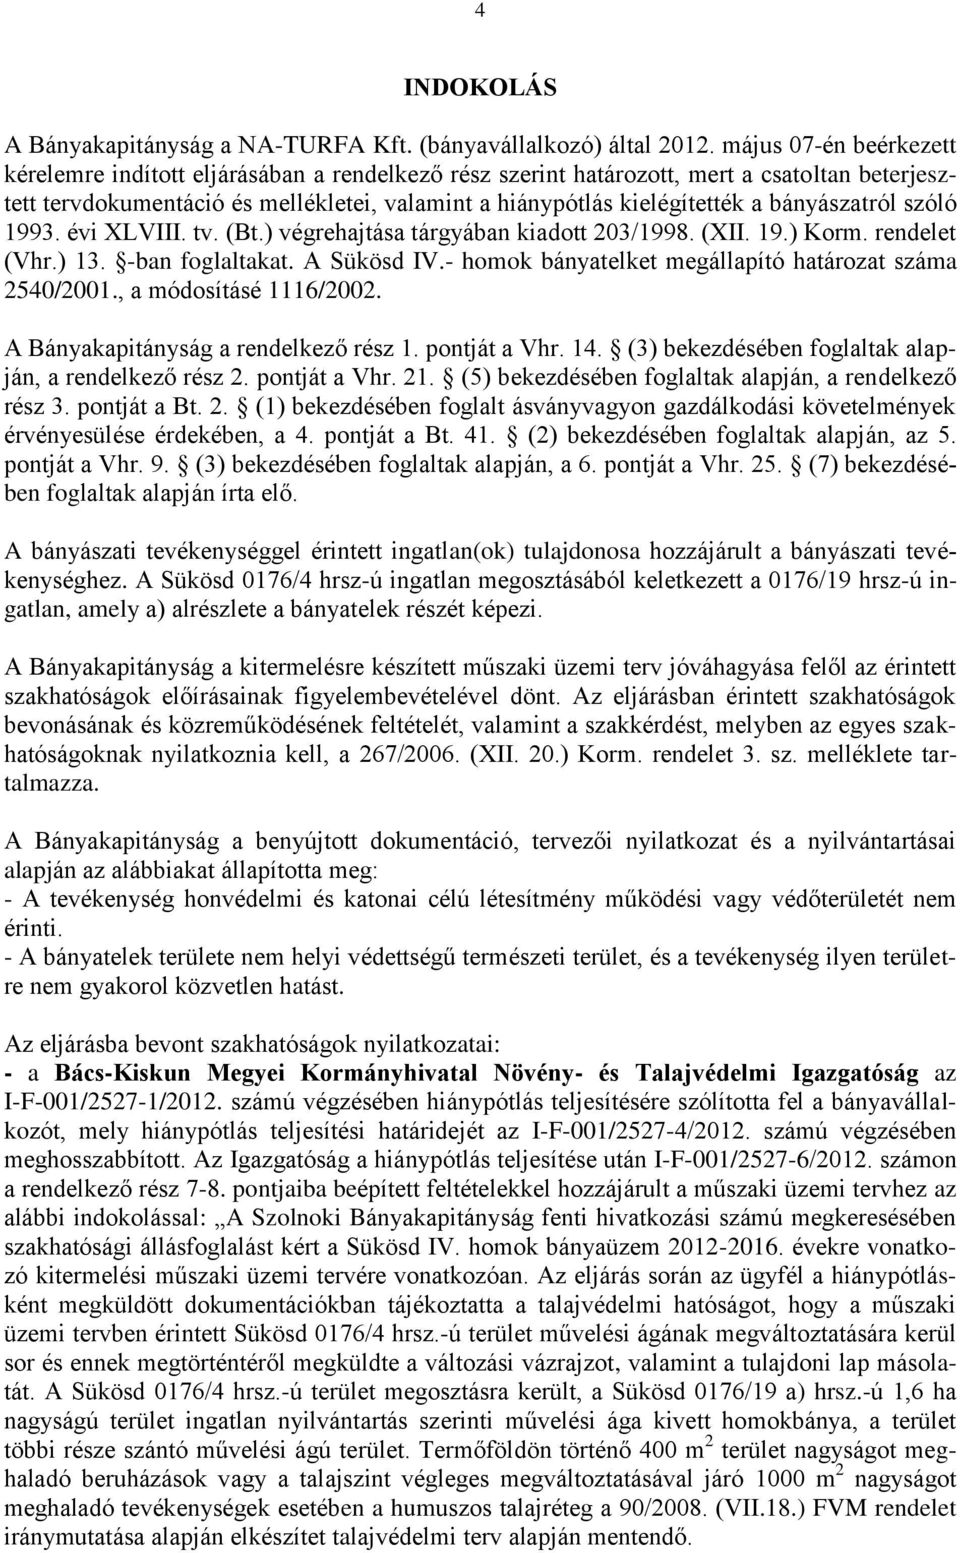 bányászatról szóló 1993. évi XLVIII. tv. (Bt.) végrehajtása tárgyában kiadott 203/1998. (XII. 19.) Korm. rendelet (Vhr.) 13. -ban foglaltakat. A Sükösd IV.